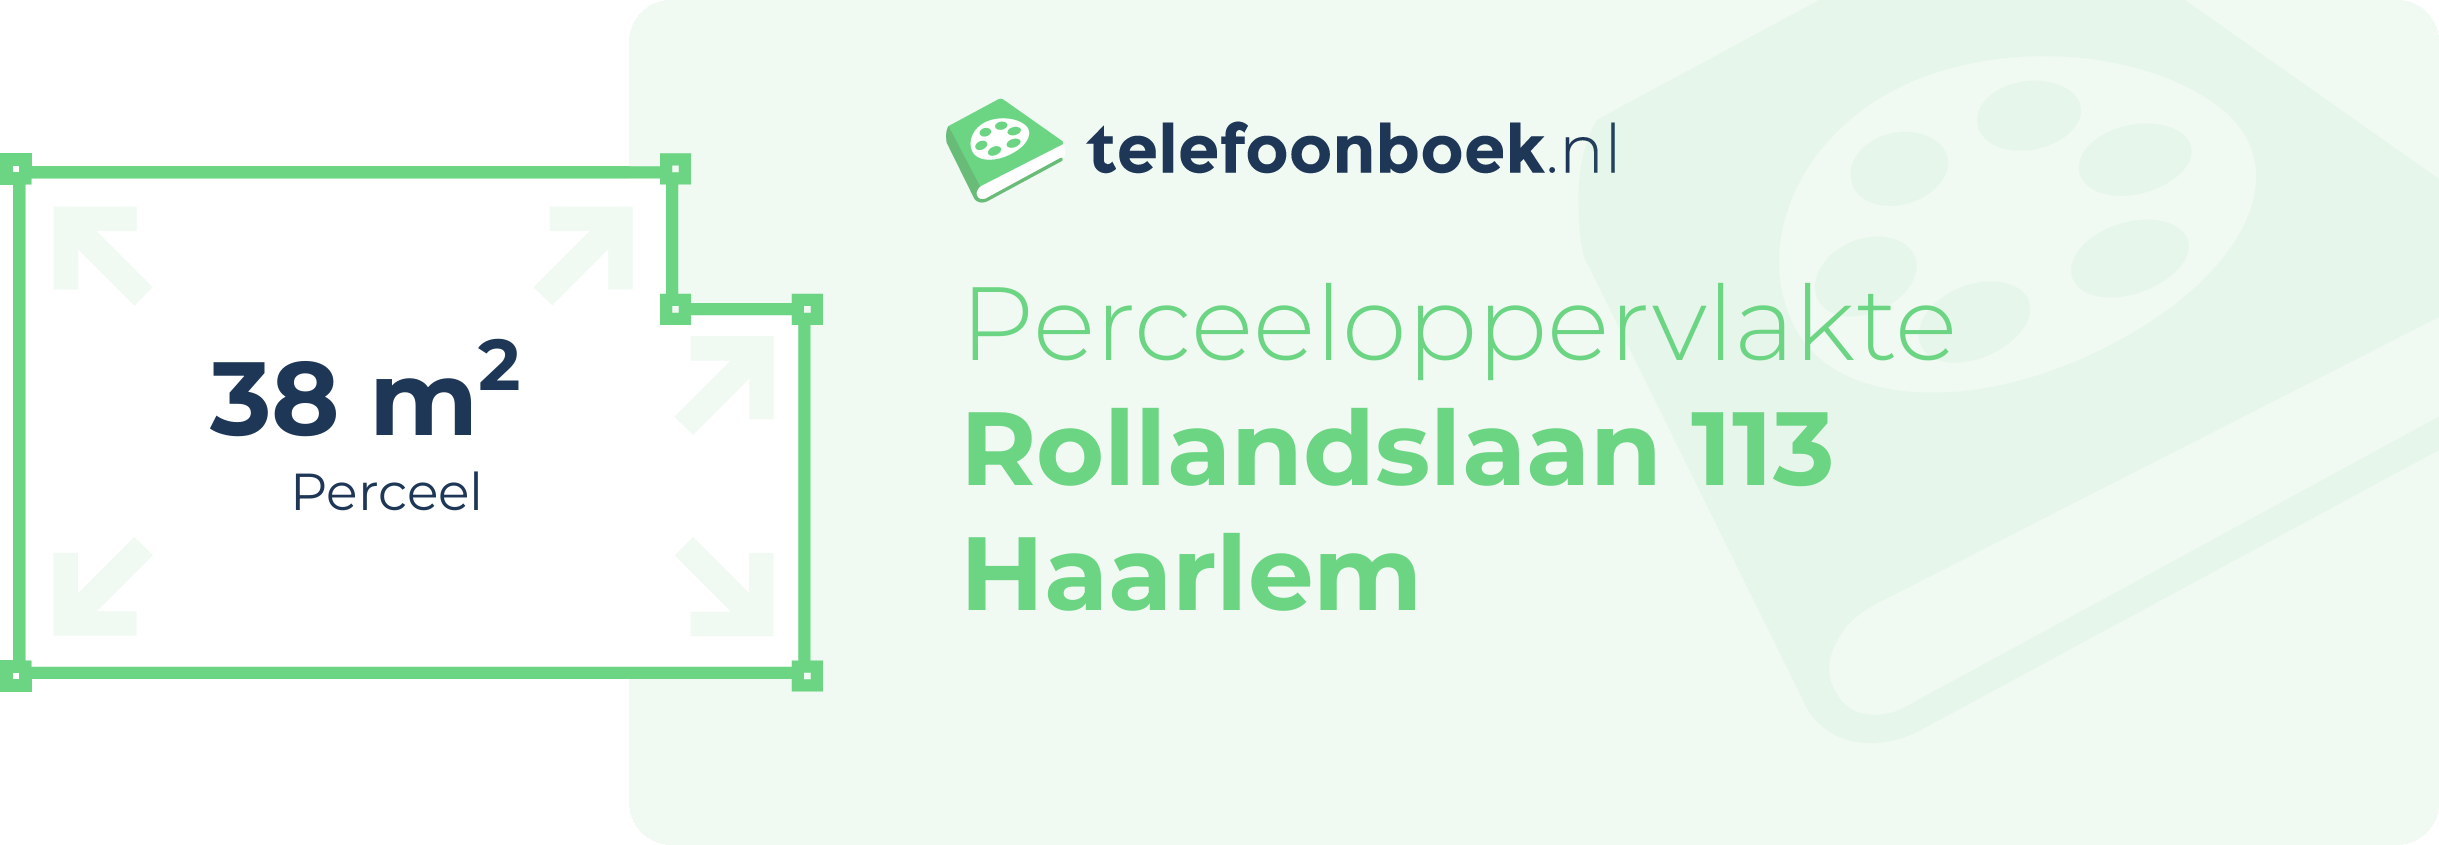 Perceeloppervlakte Rollandslaan 113 Haarlem